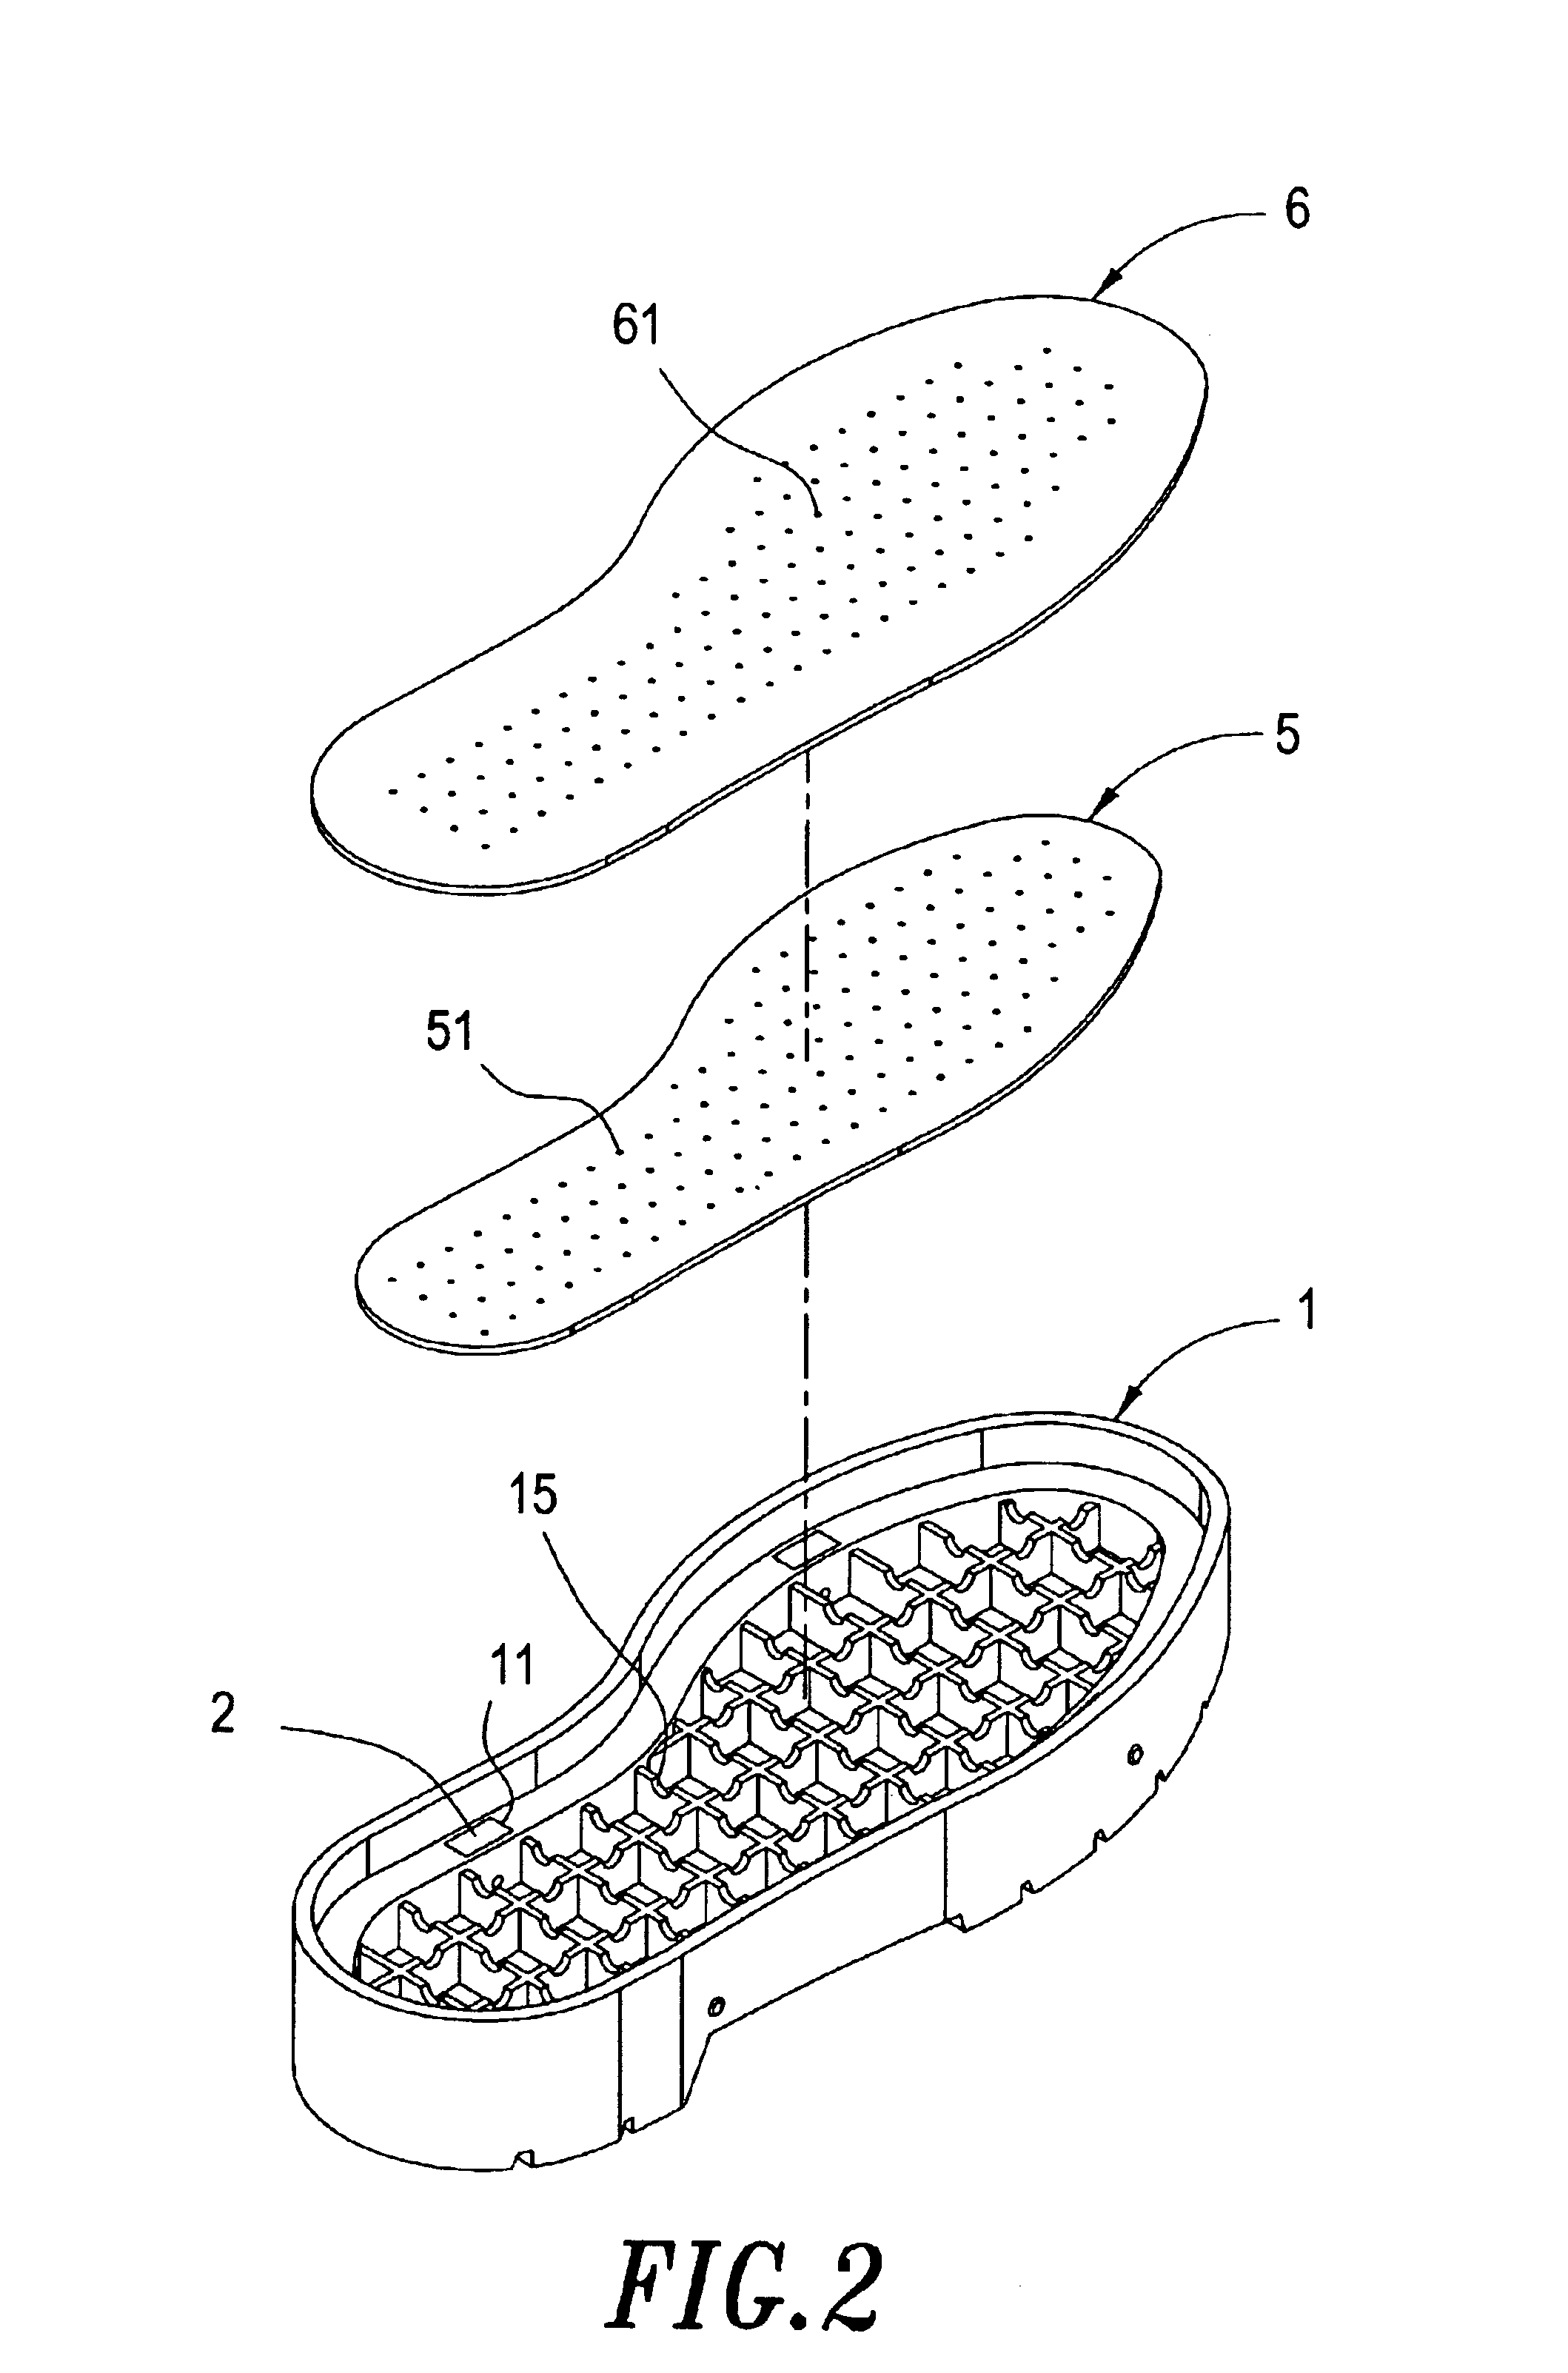 Shoe sole structure